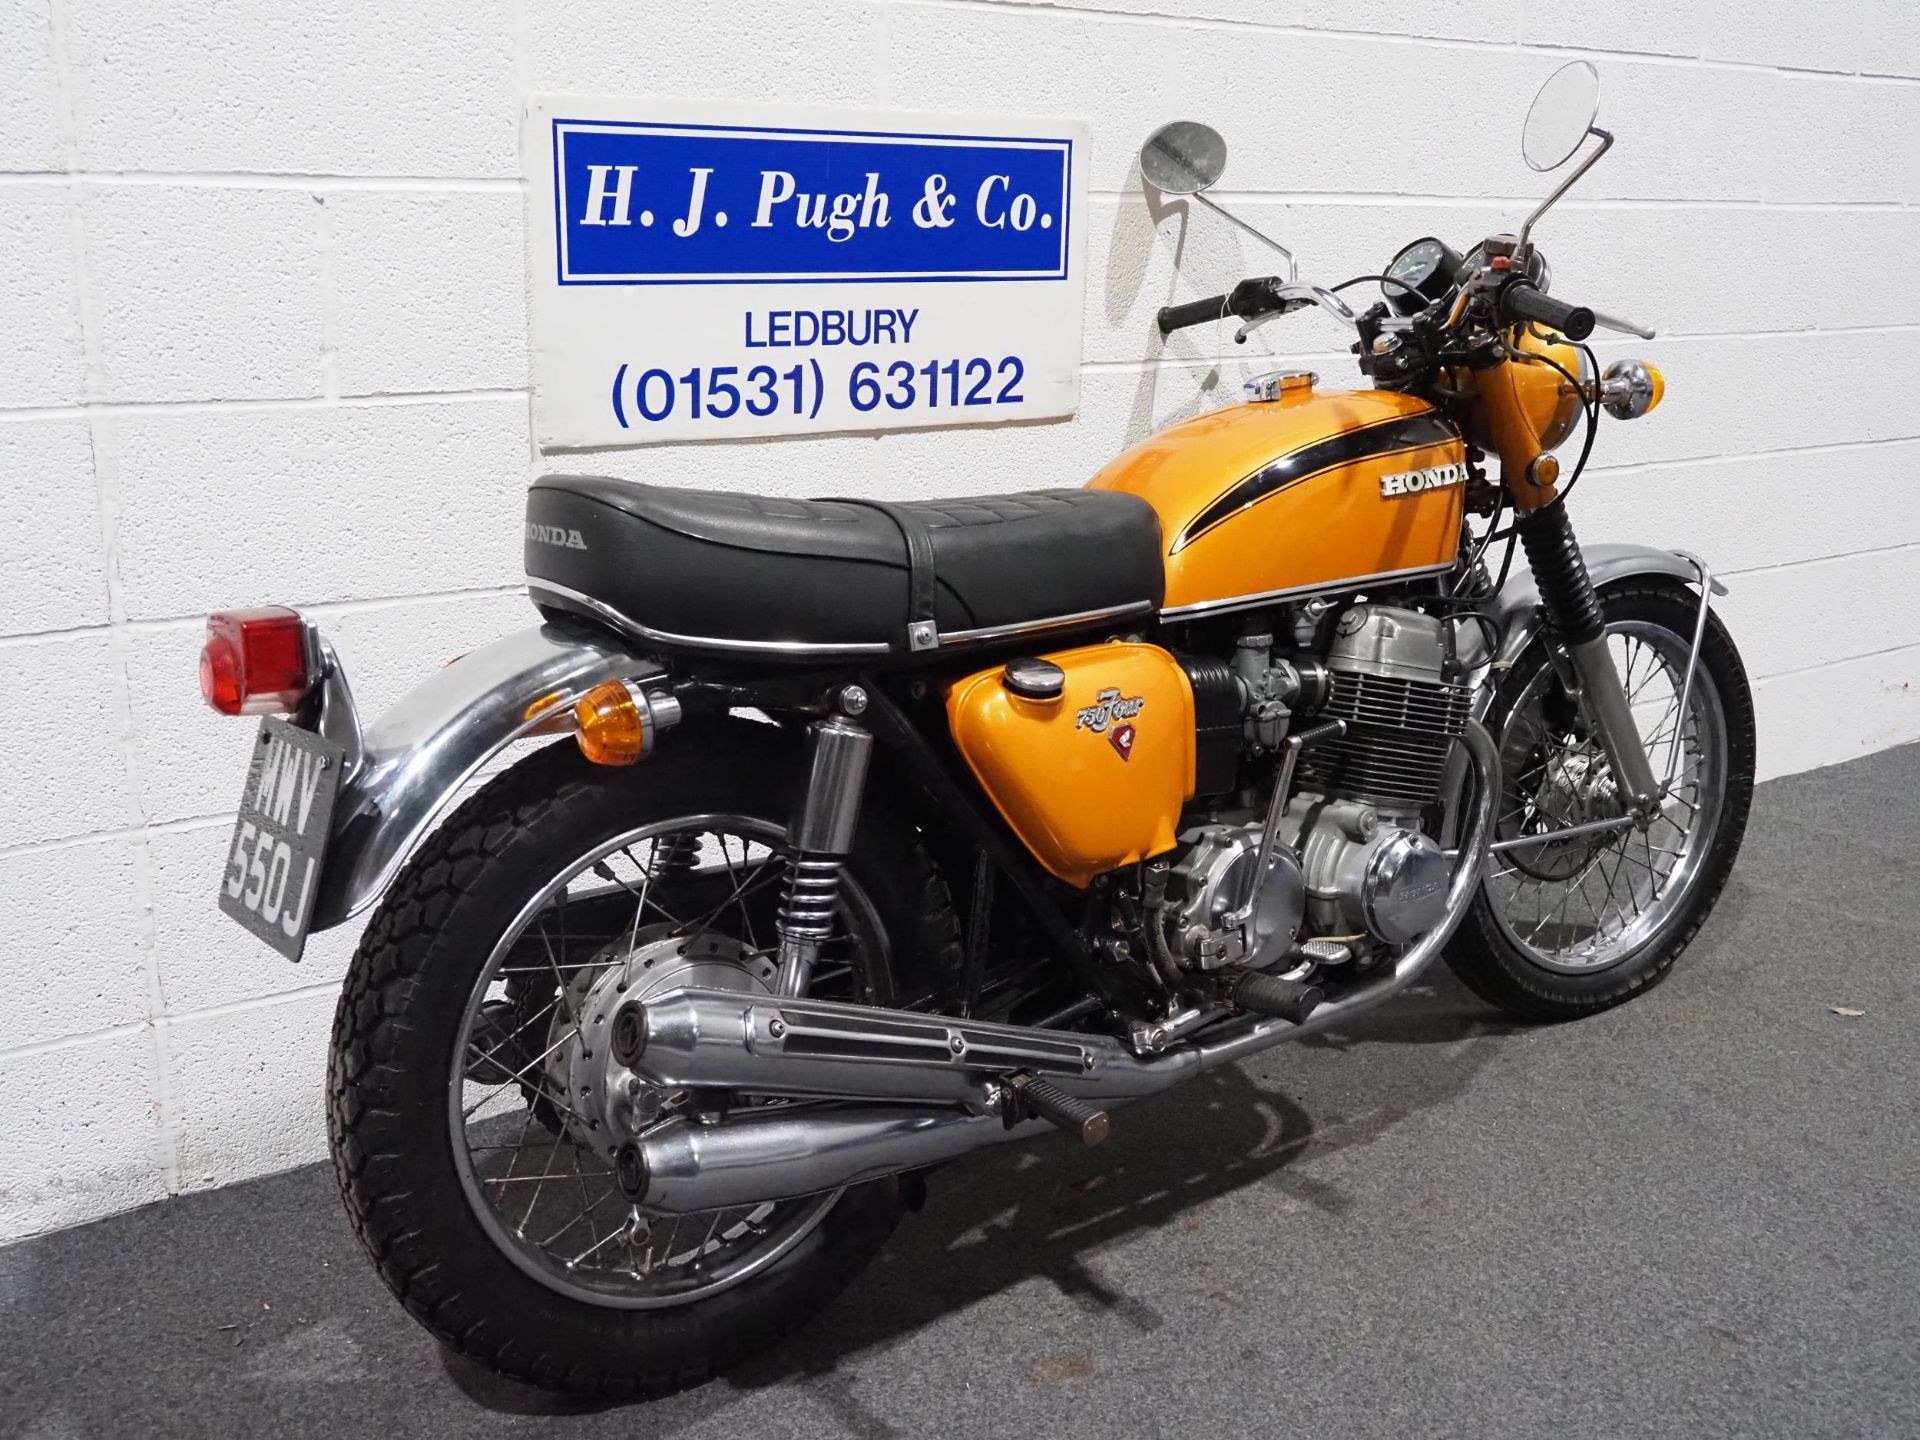 Honda 750-4 motorcycle, 1971, 750cc Frame no. CB7501118119 Engine no. CB7501117934 Runs and rides, - Image 3 of 6